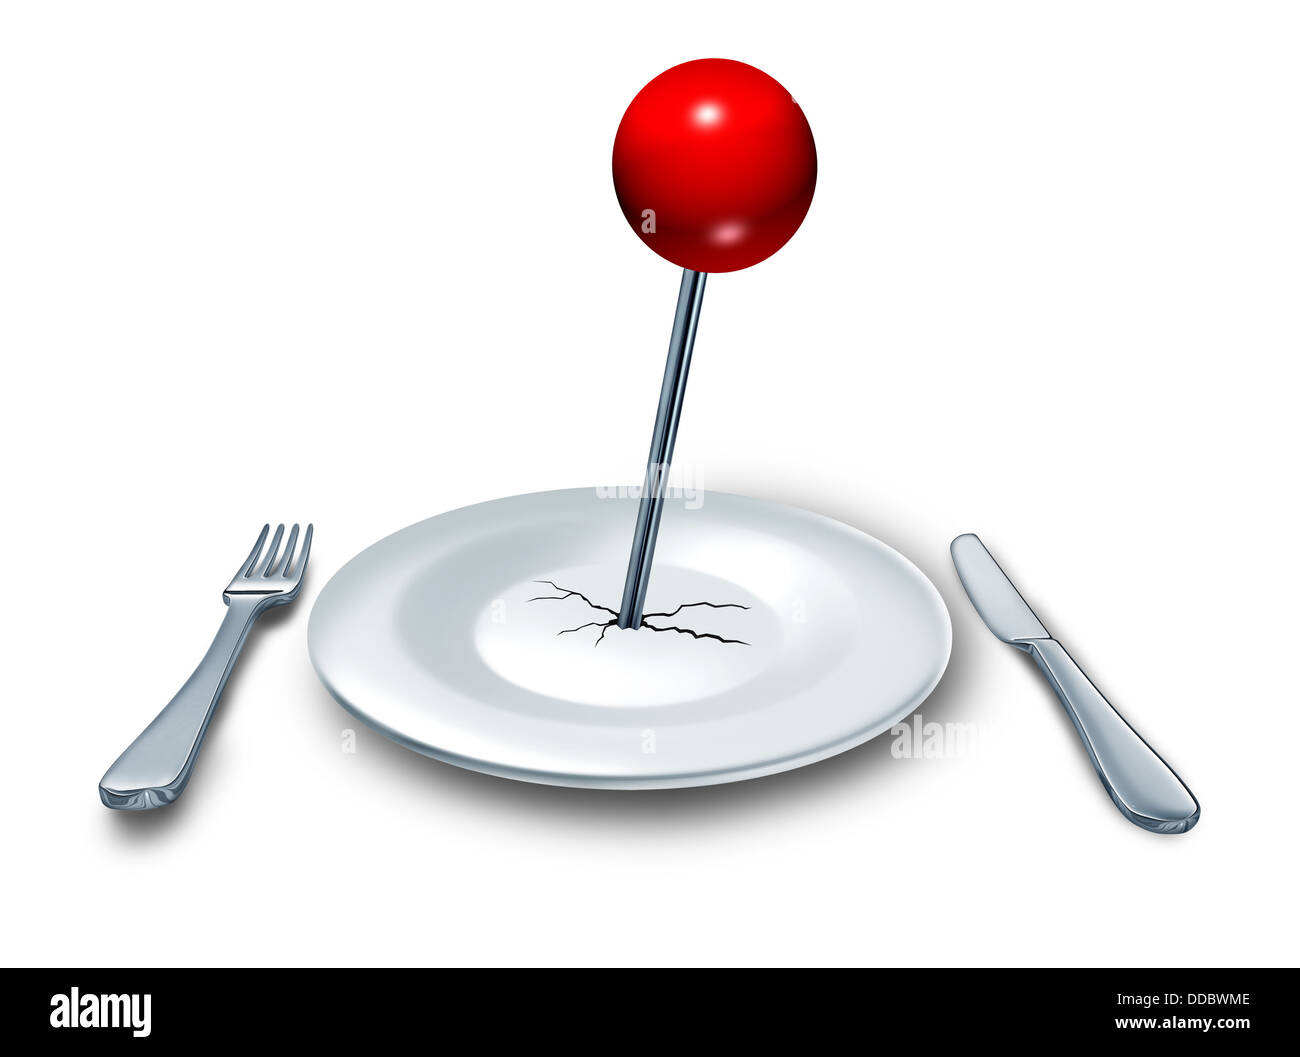 Endroit pour manger dans un restaurant ou dîner dans l'alimentation et boissons concept avec une assiette et un lieu avec fourchette et couteau couverts sur une table avec une situation de pousser l'axe rouge sur le plat comme un symbole de lieux de restauration. Banque D'Images